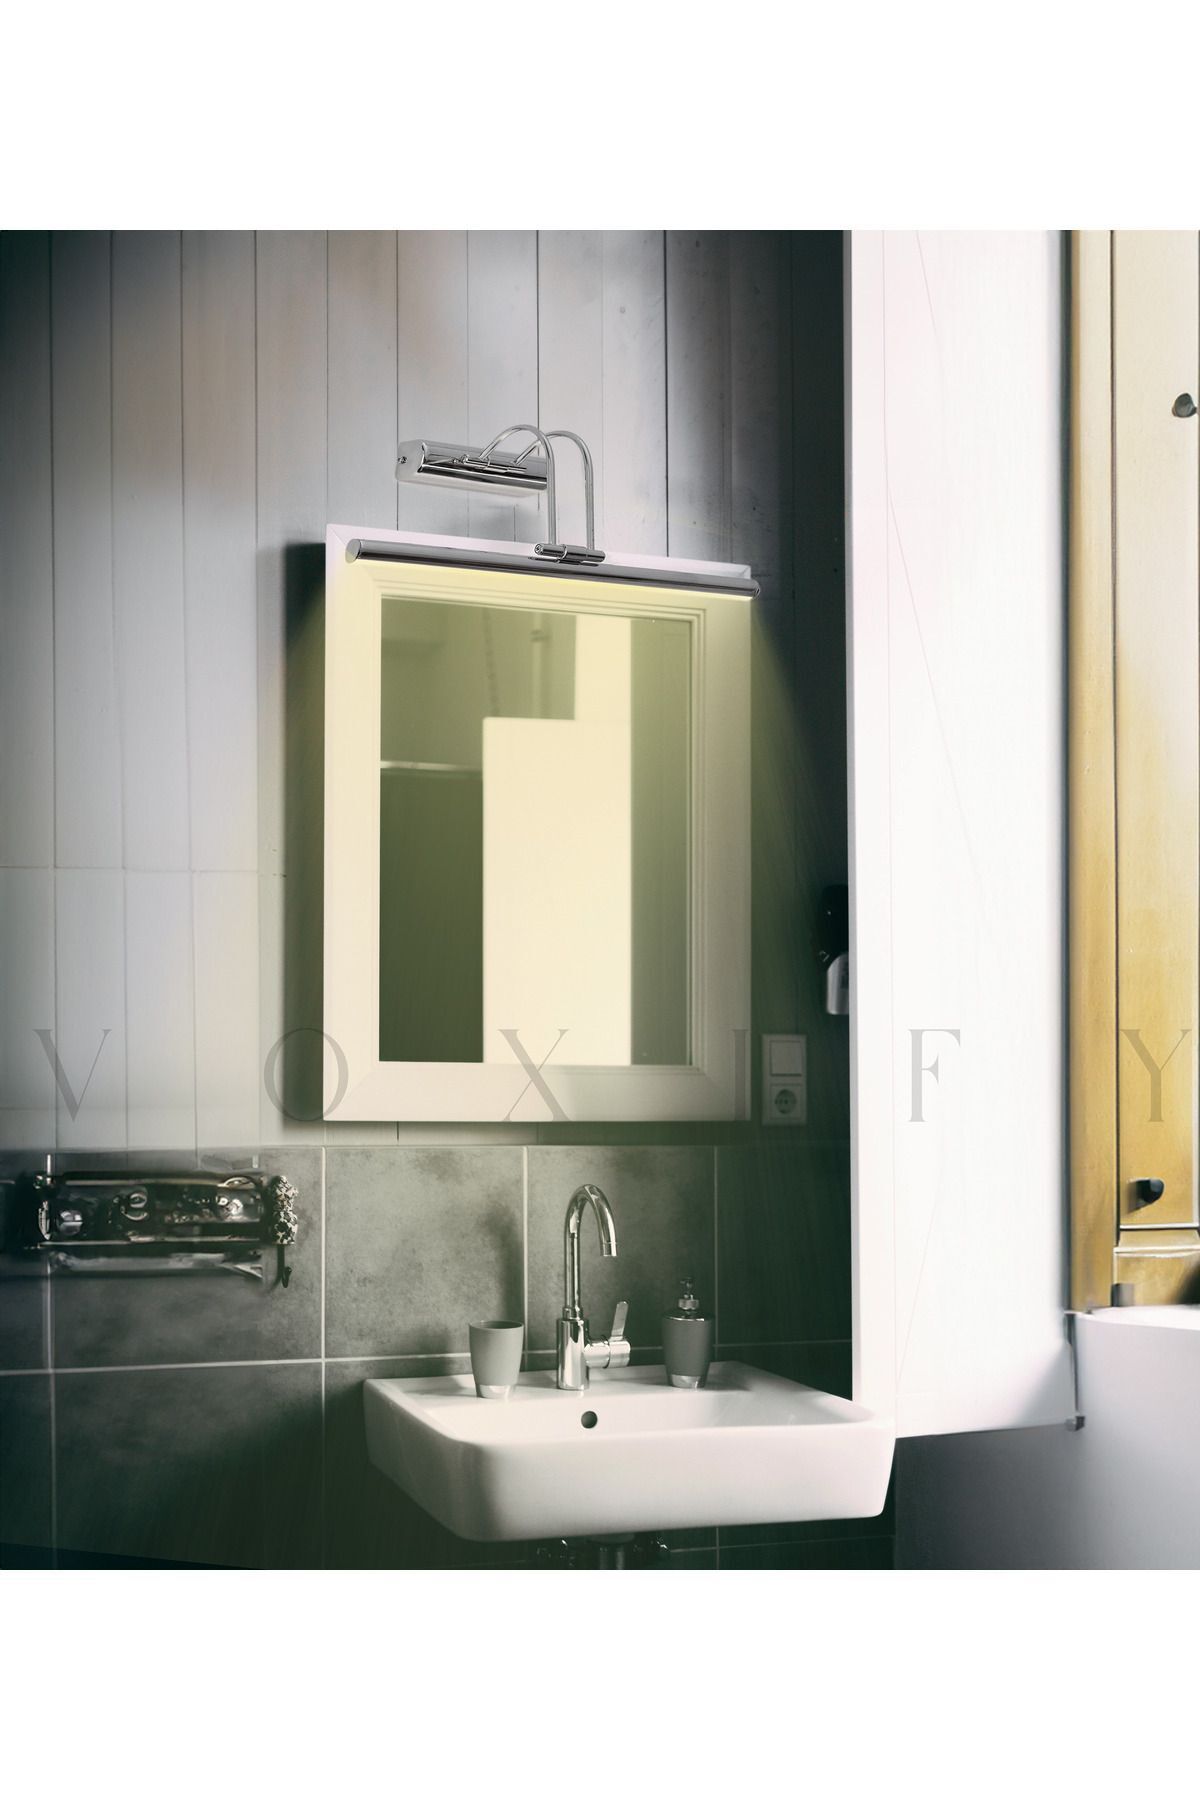 Voxify Gümüş Kaplama Gün Işığı (Sarı) Banyo Duvar Ayna Tablo Aydınlatması Flüt Aplik Kuğu Aplik Ledli Aplik